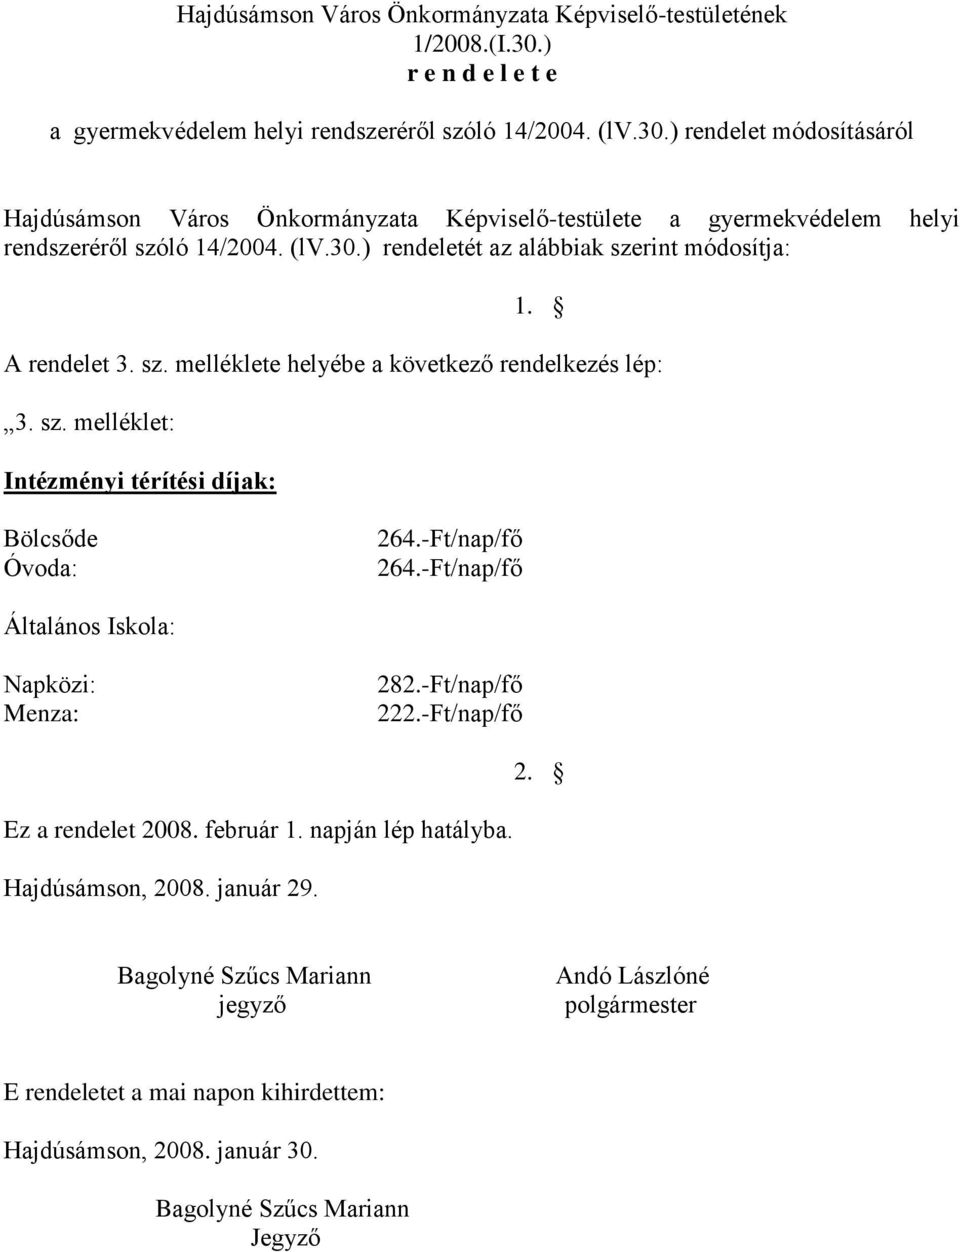 ) rendelet módosításáról Hajdúsámson Város Önkormányzata Képviselő-testülete a gyermekvédelem helyi rendszeréről szóló 14/2004. (lv.30.) rendeletét az alábbiak szerint módosítja: 1.